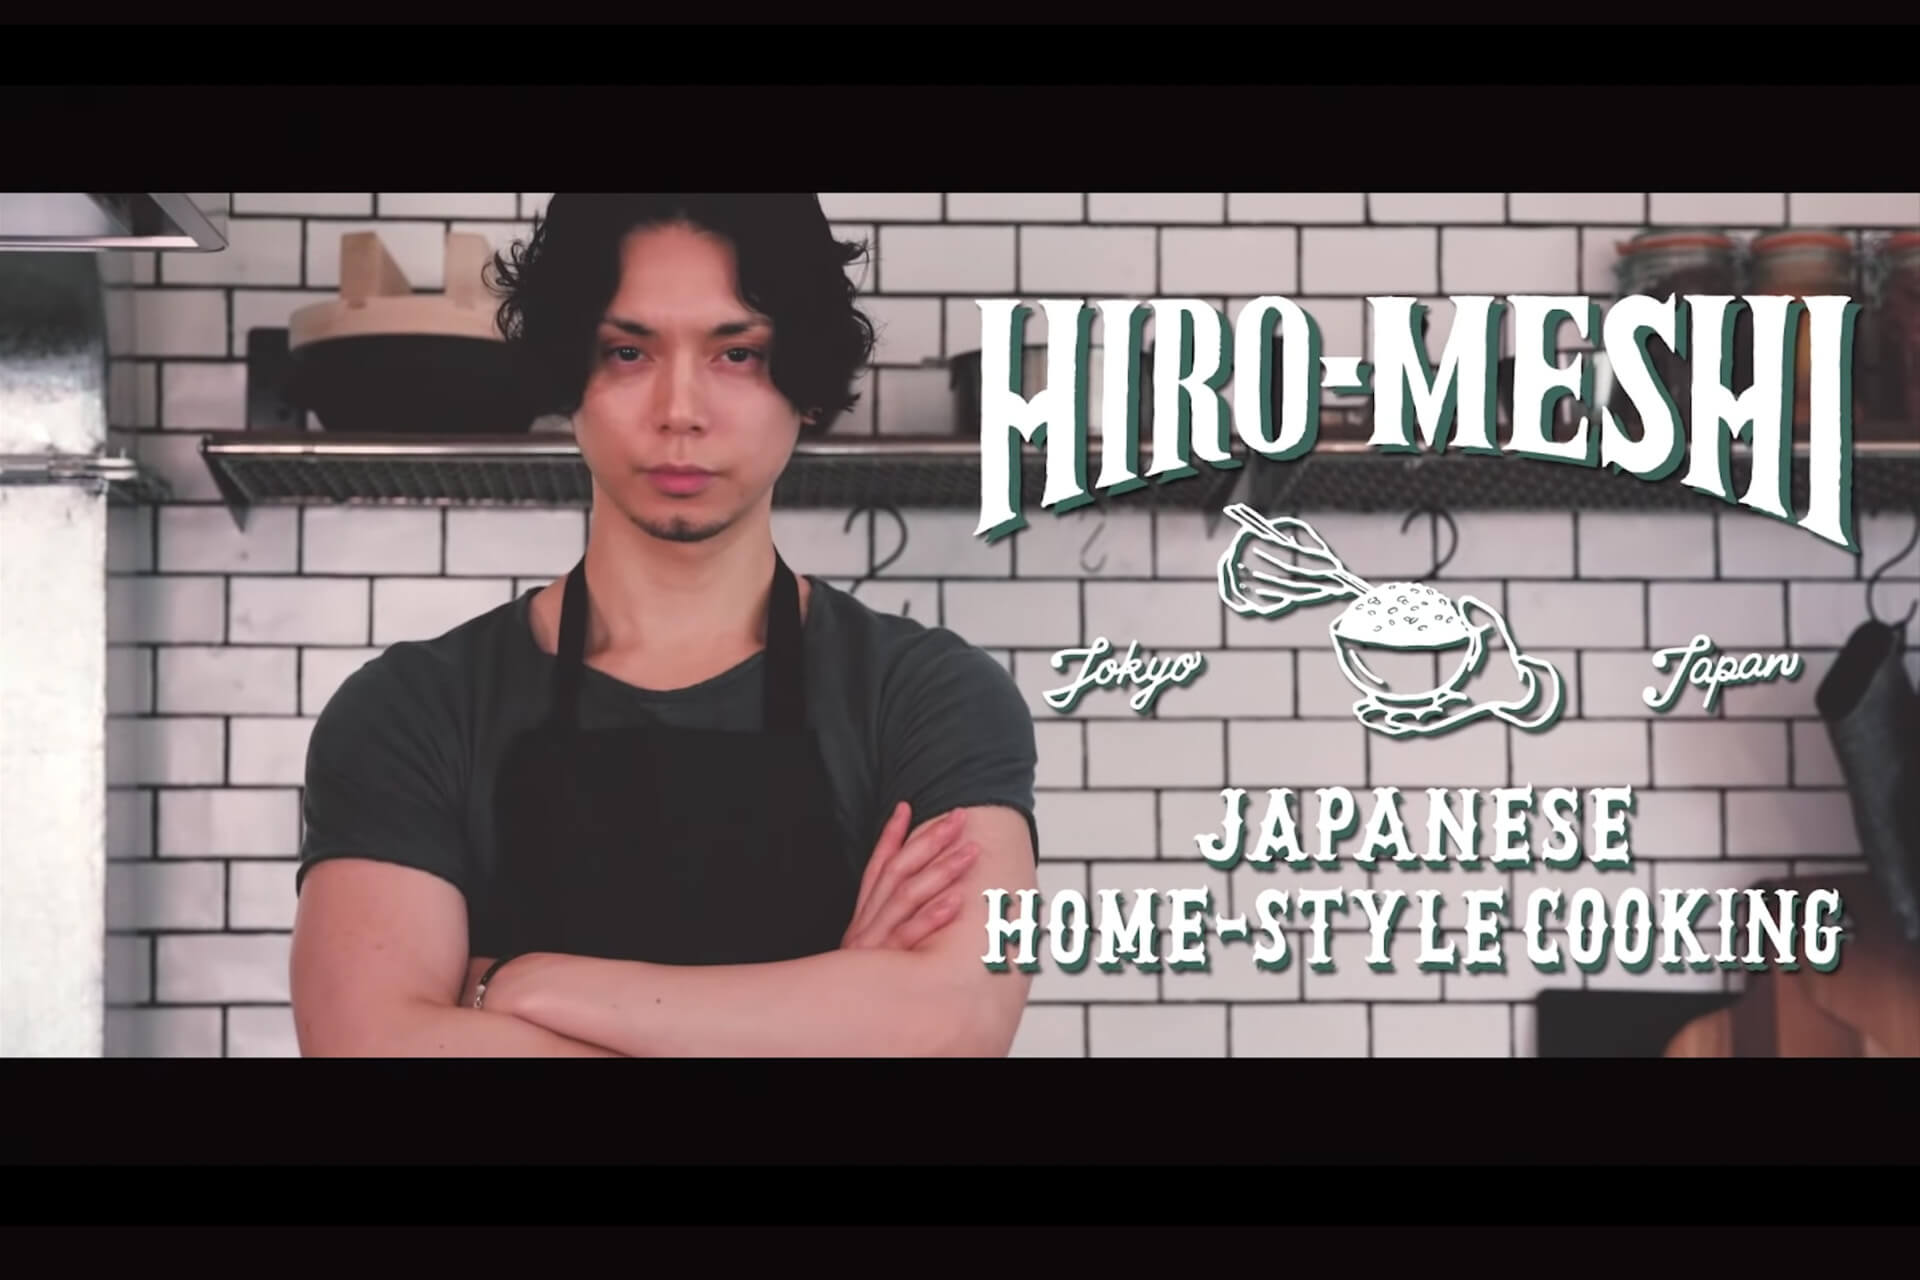 水嶋ヒロがyoutubeで日本料理研究番組 Hiro Meshi をスタート Qetic